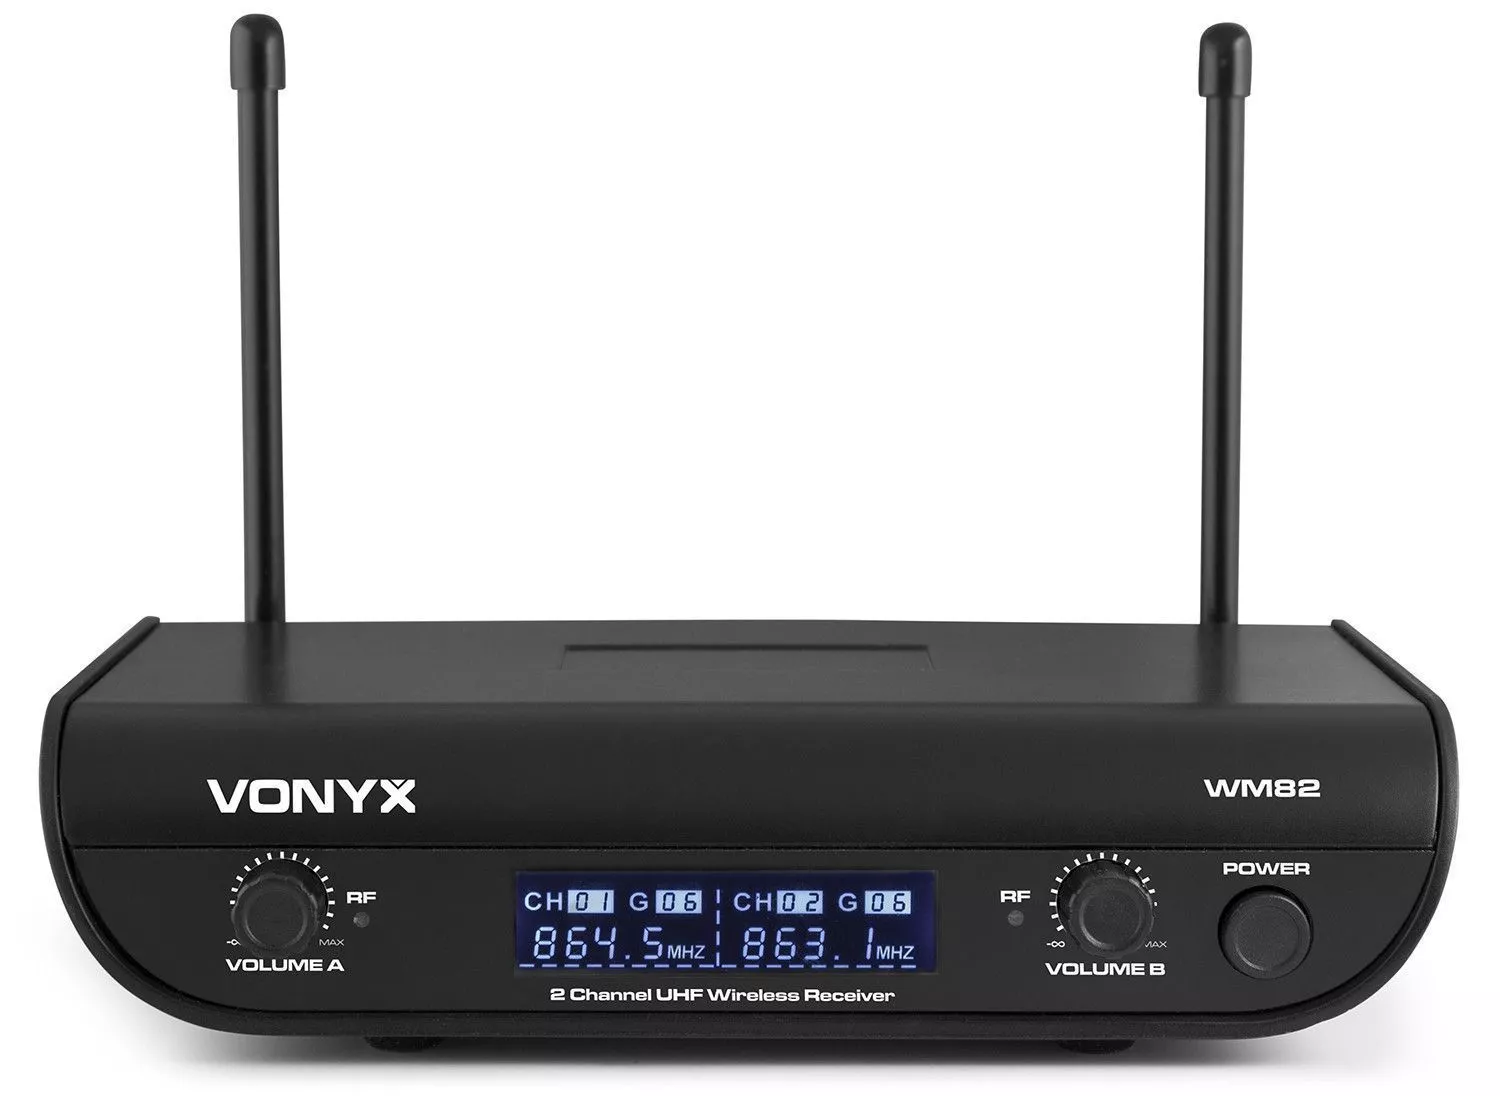 Vonyx retourdeals draadloze microfoons|draadloze microfoons|headset microfoons